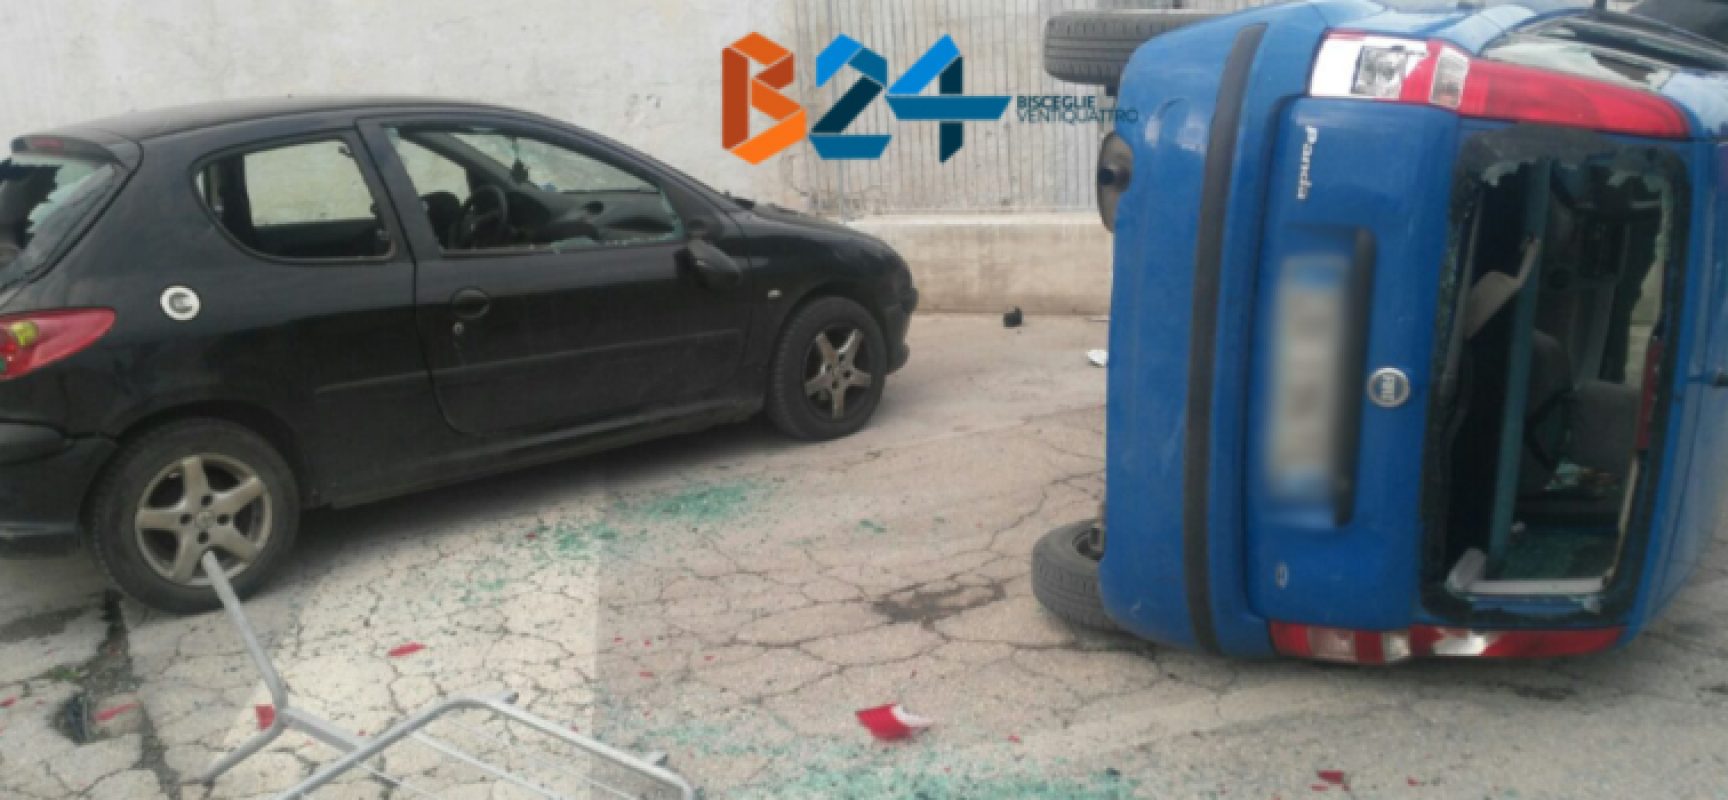 Due auto distrutte fuori allo stadio “Ventura” durante Unione Calcio-Molfetta